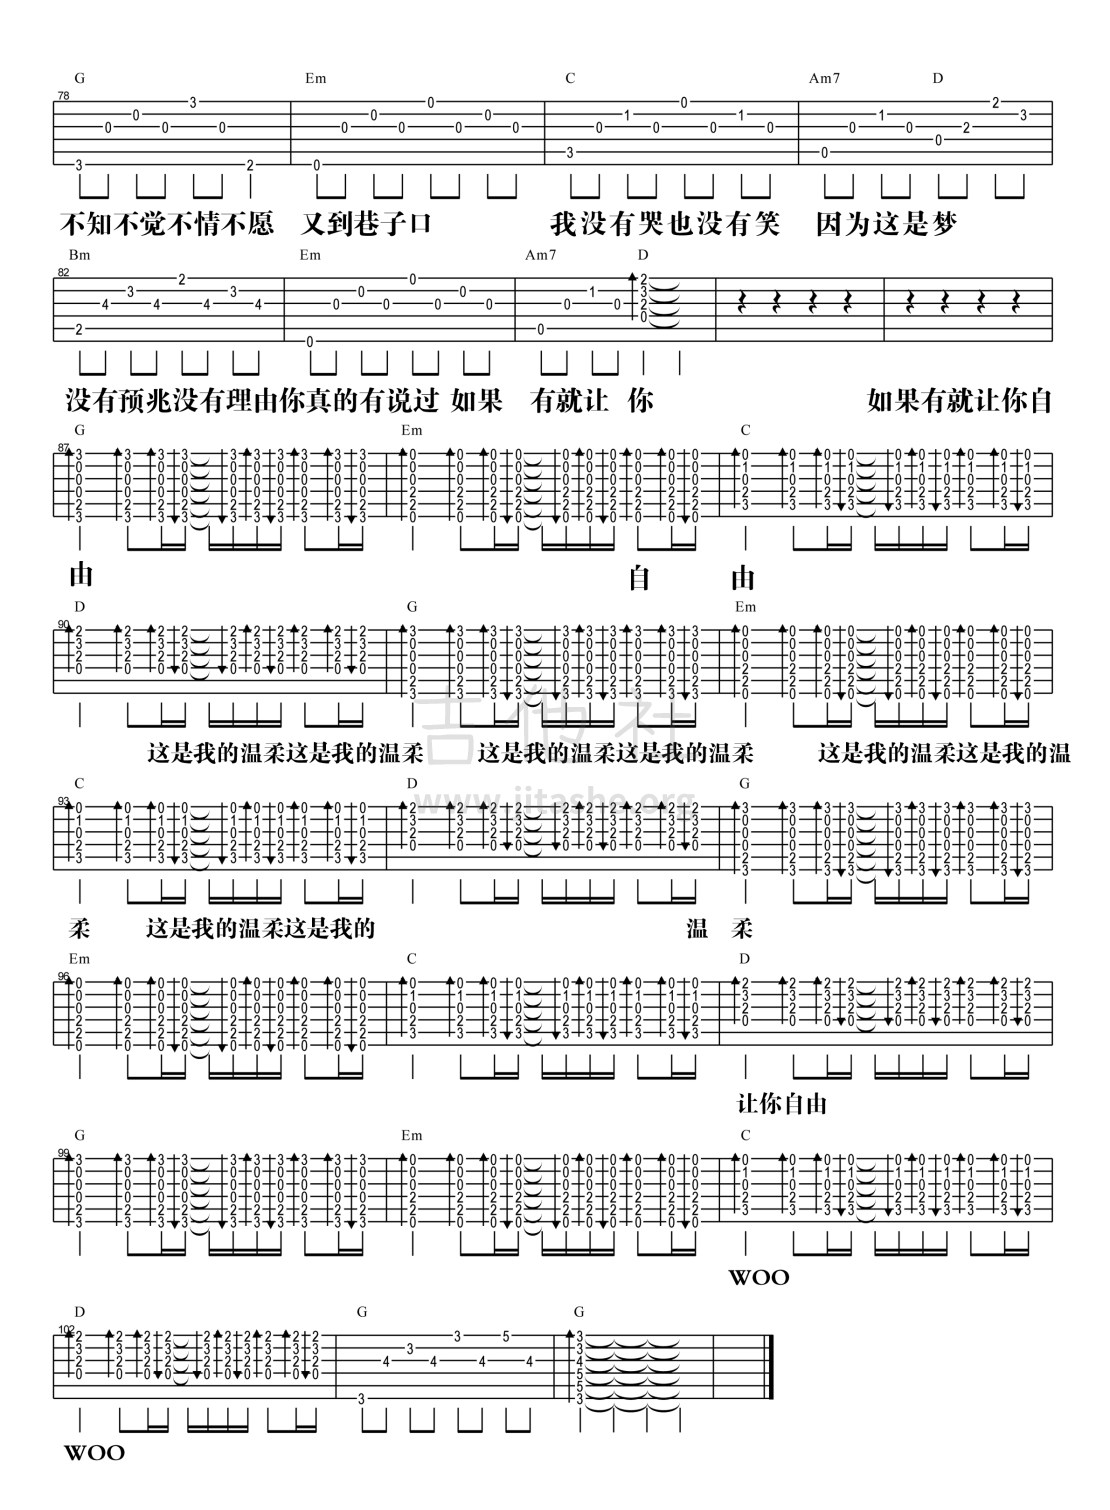 【阿信乐器】#19 五月天《温柔》3DNA版吉他教学吉他谱(图片谱,弹唱)_五月天(Mayday)_温柔·-4.jpg